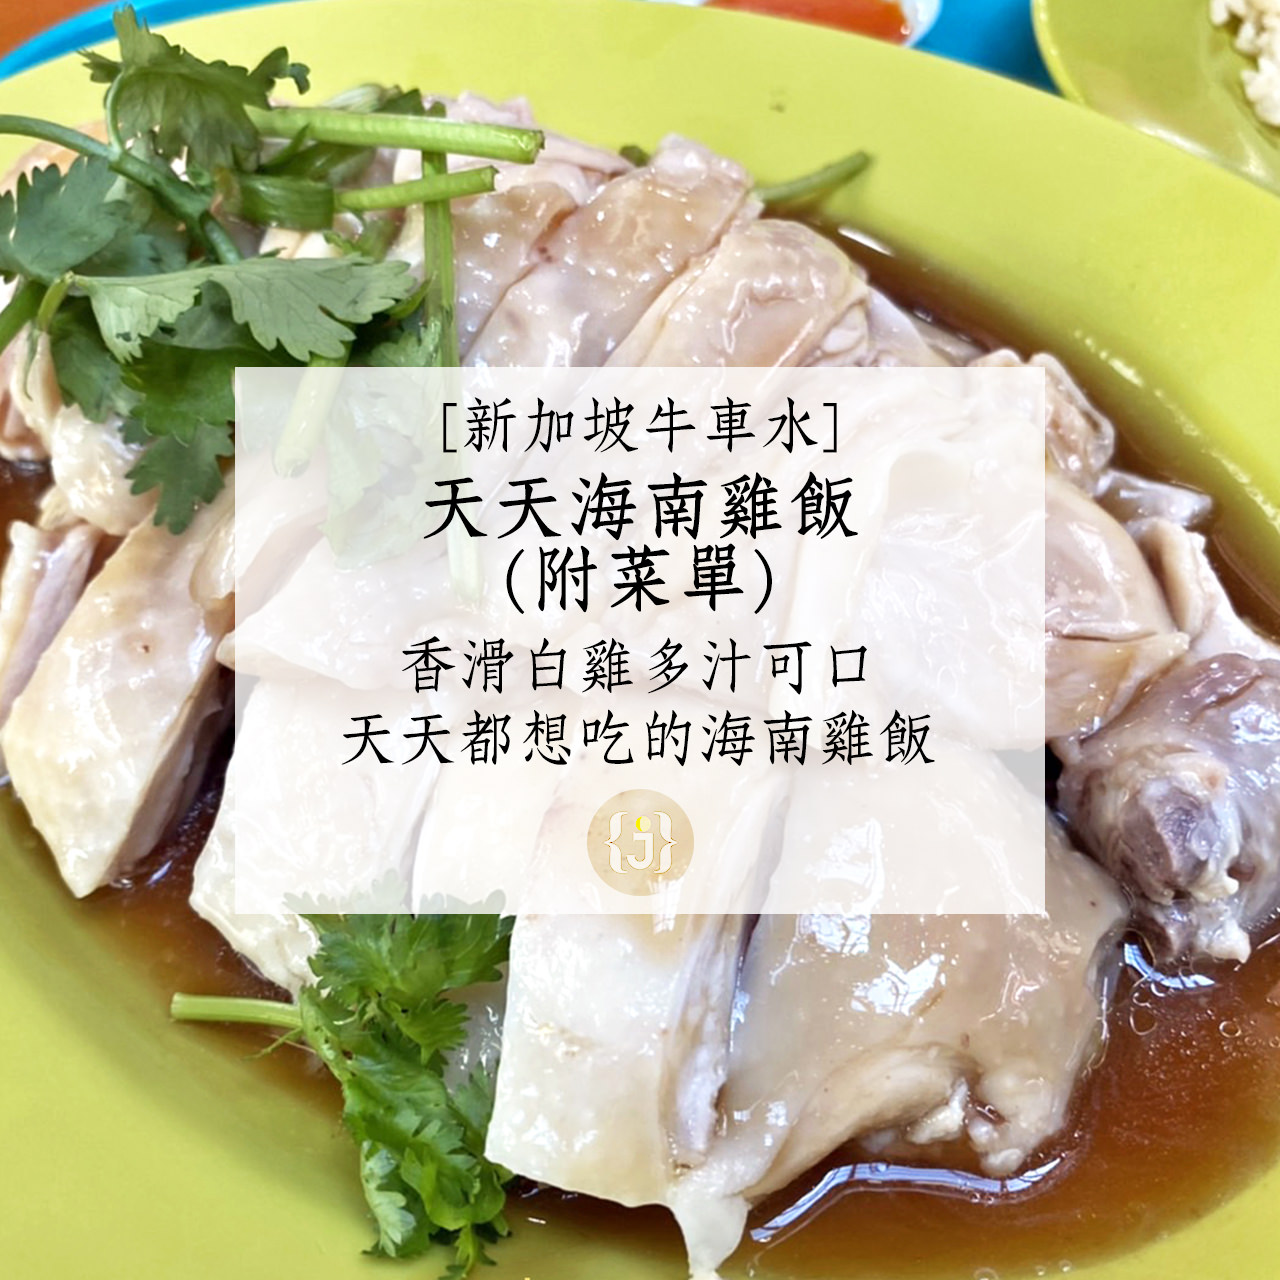 【新加坡牛車水】天天海南雞飯附菜單香滑白雞多汁可口 天天都想吃的海南雞飯